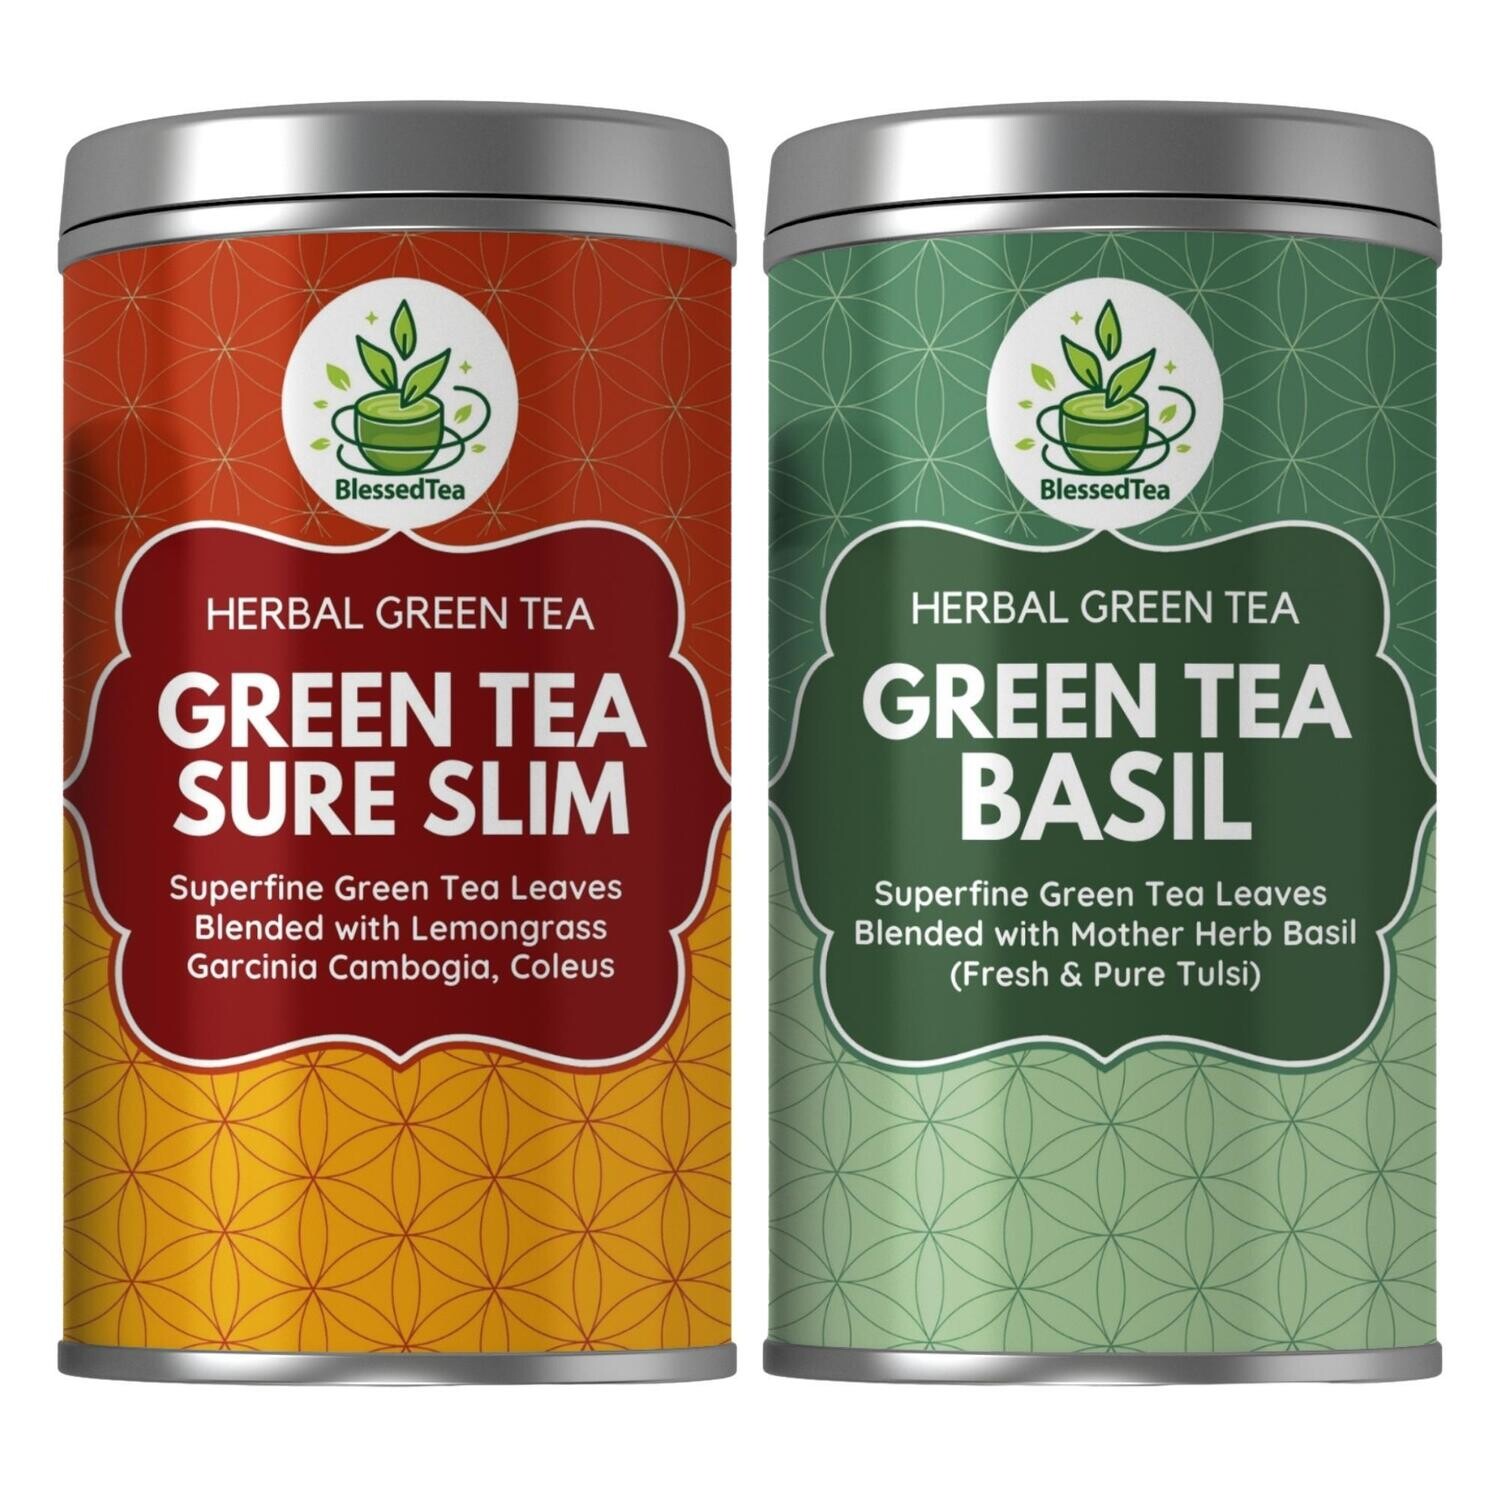 Combo Packs - Green Tea SureSlim 50Gram Plus Green Tea Basil 100Gram (2 Teas)